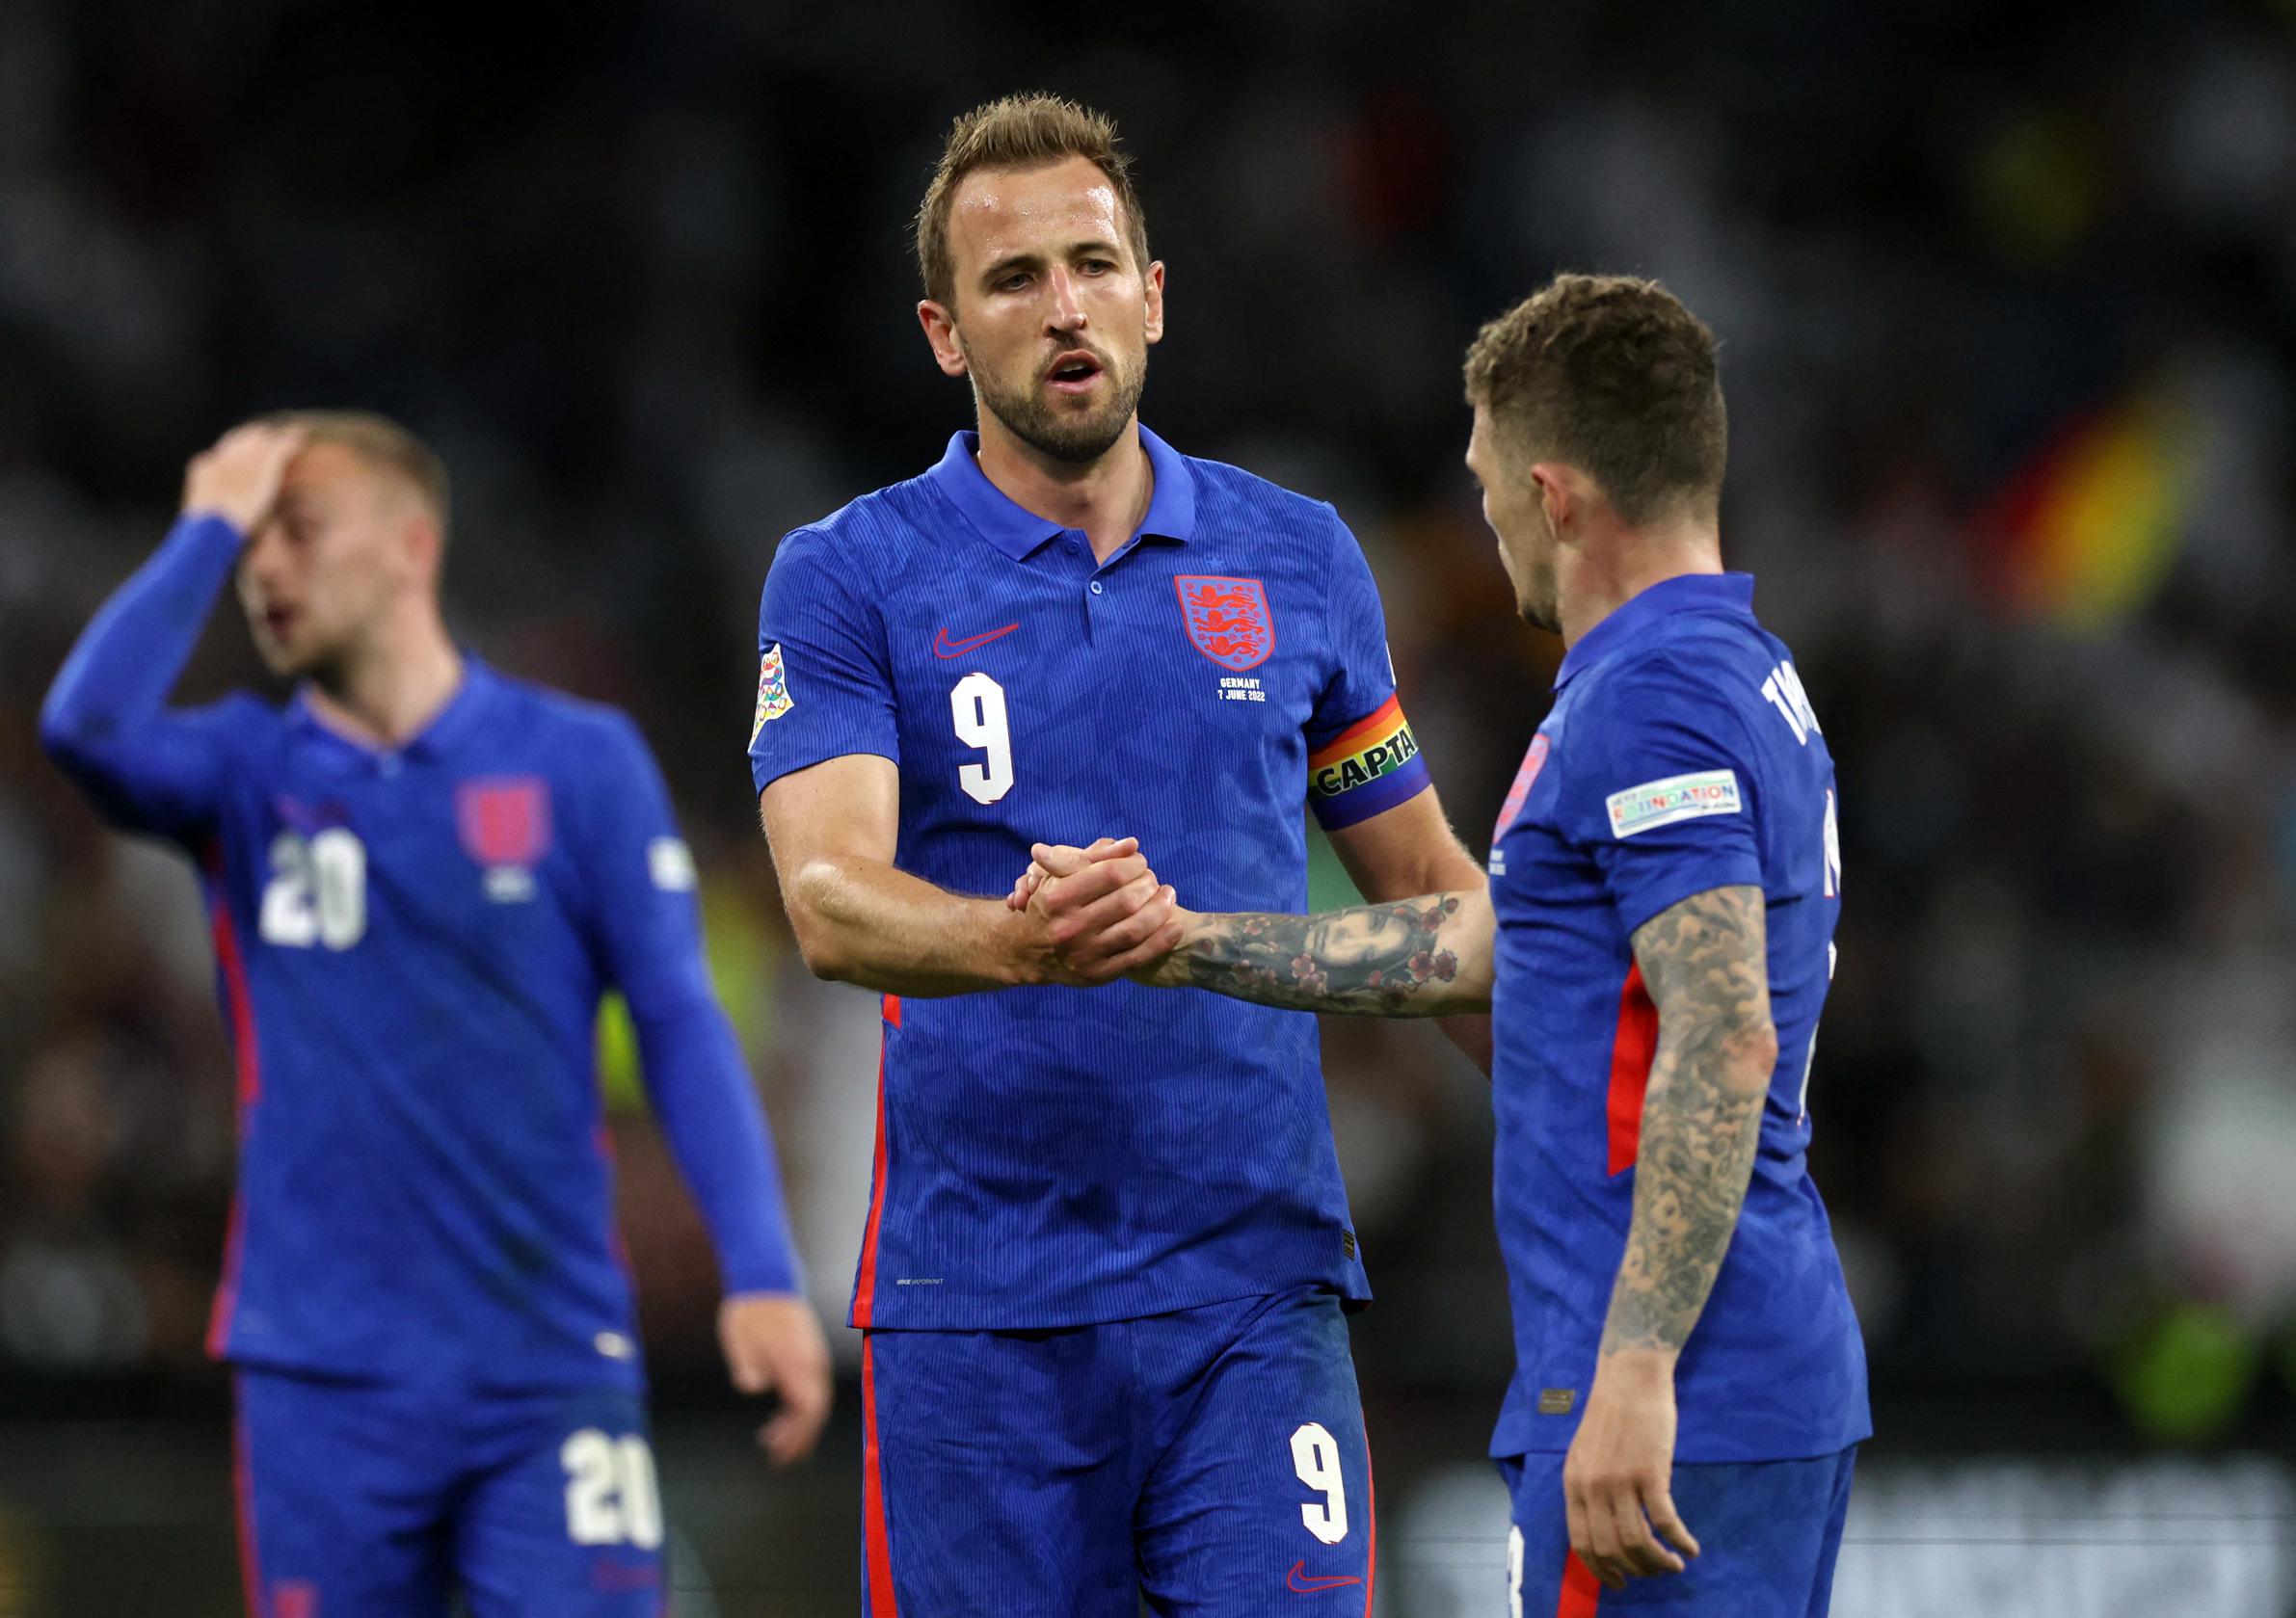 L’Inghilterra ha preso un punto contro la Germania nella Nations League, e finalmente l’Italia potrebbe vincere ancora